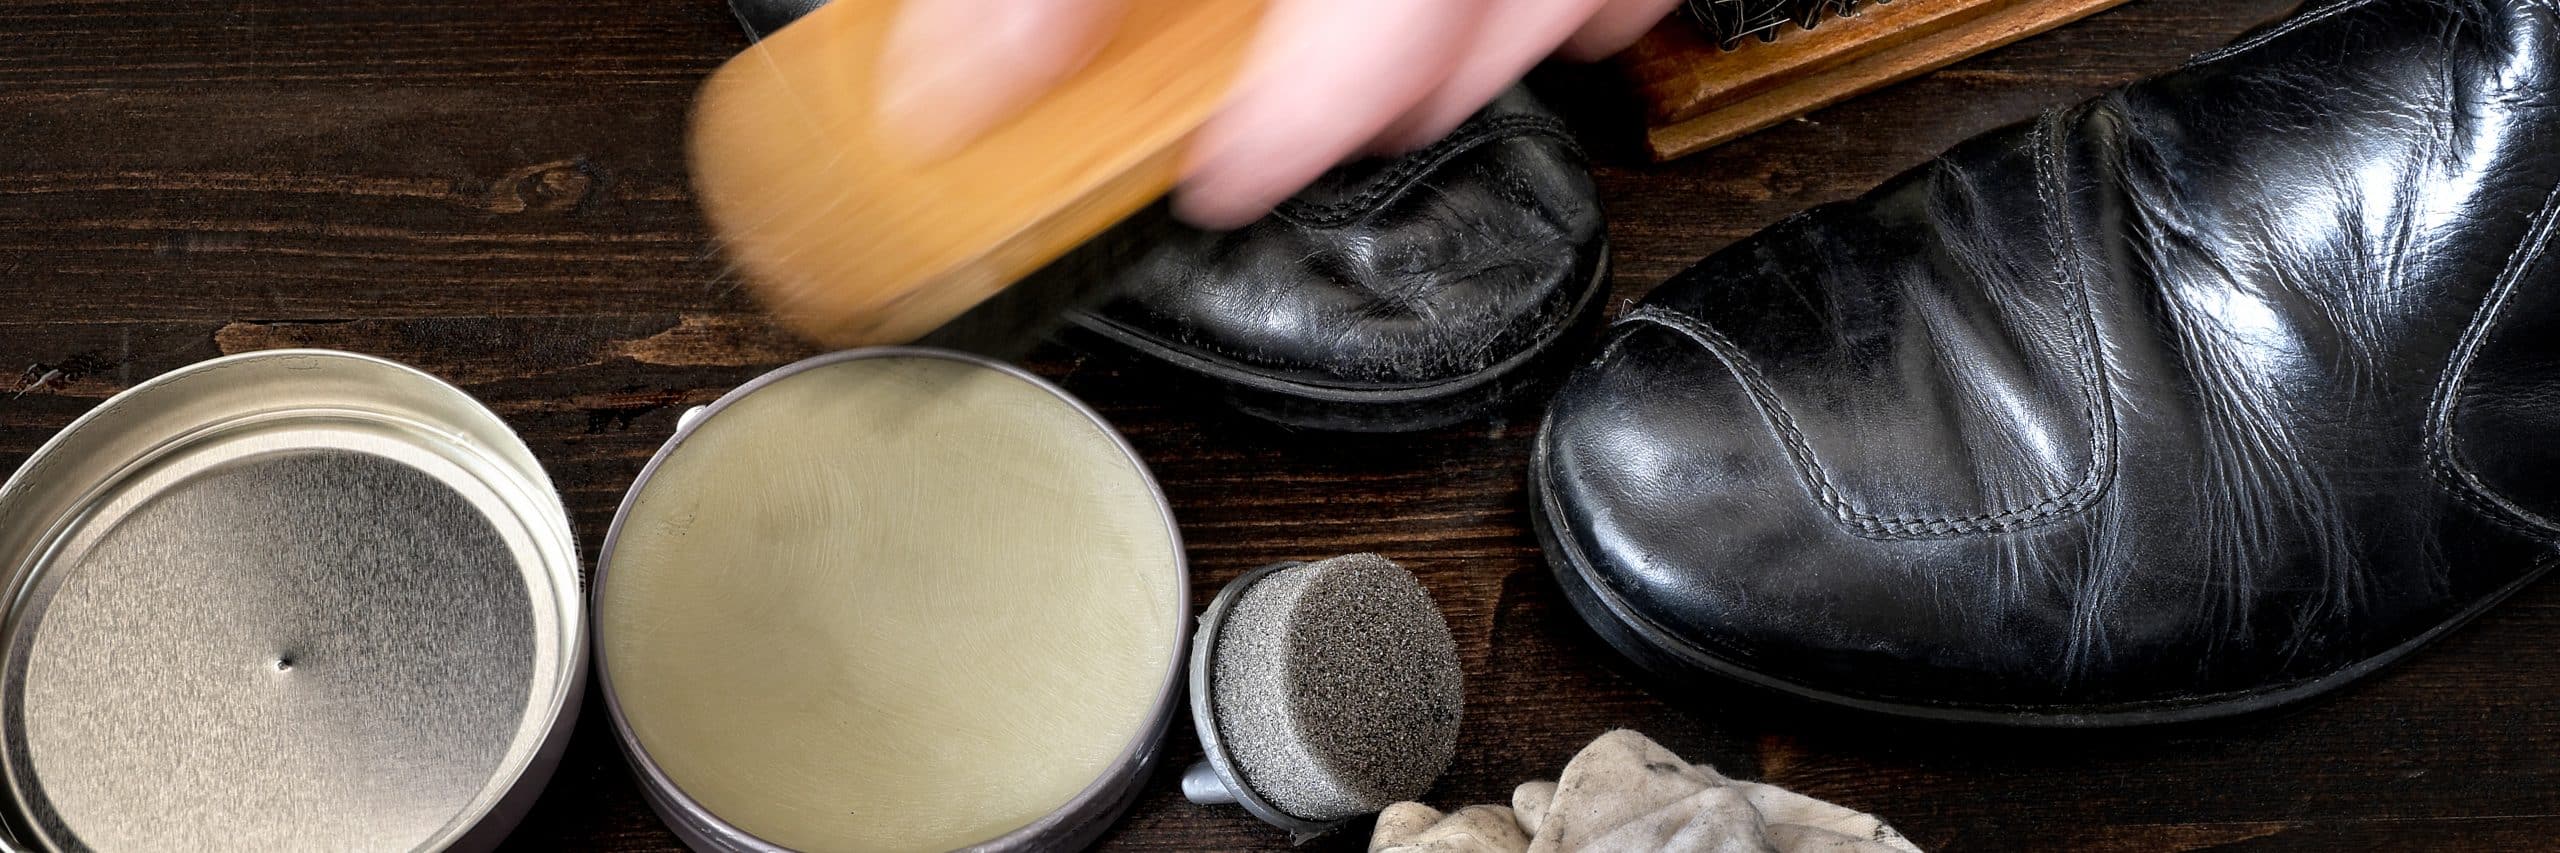 לנקות נעלי בלנסטון – איך עושים זאת נכון?